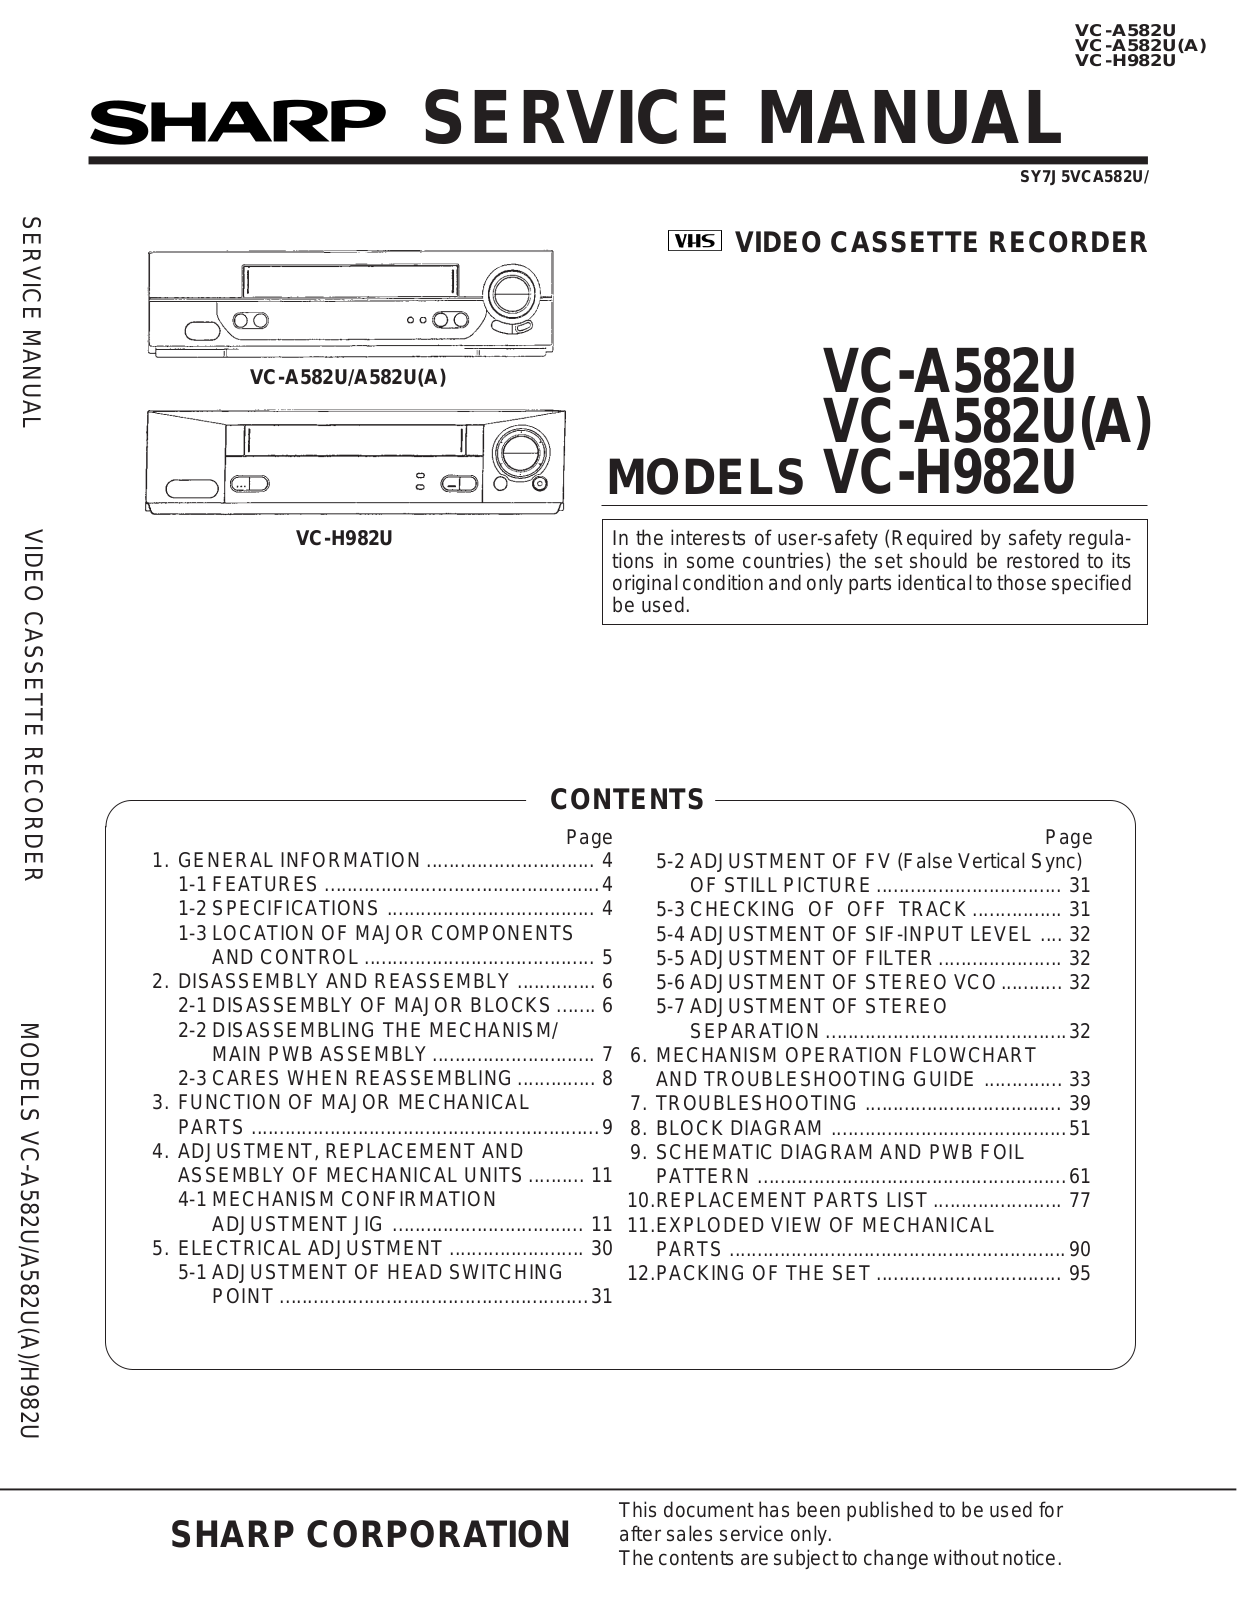 Sharp VC-H982U, VC-A582U, VC-A582UA User Manual